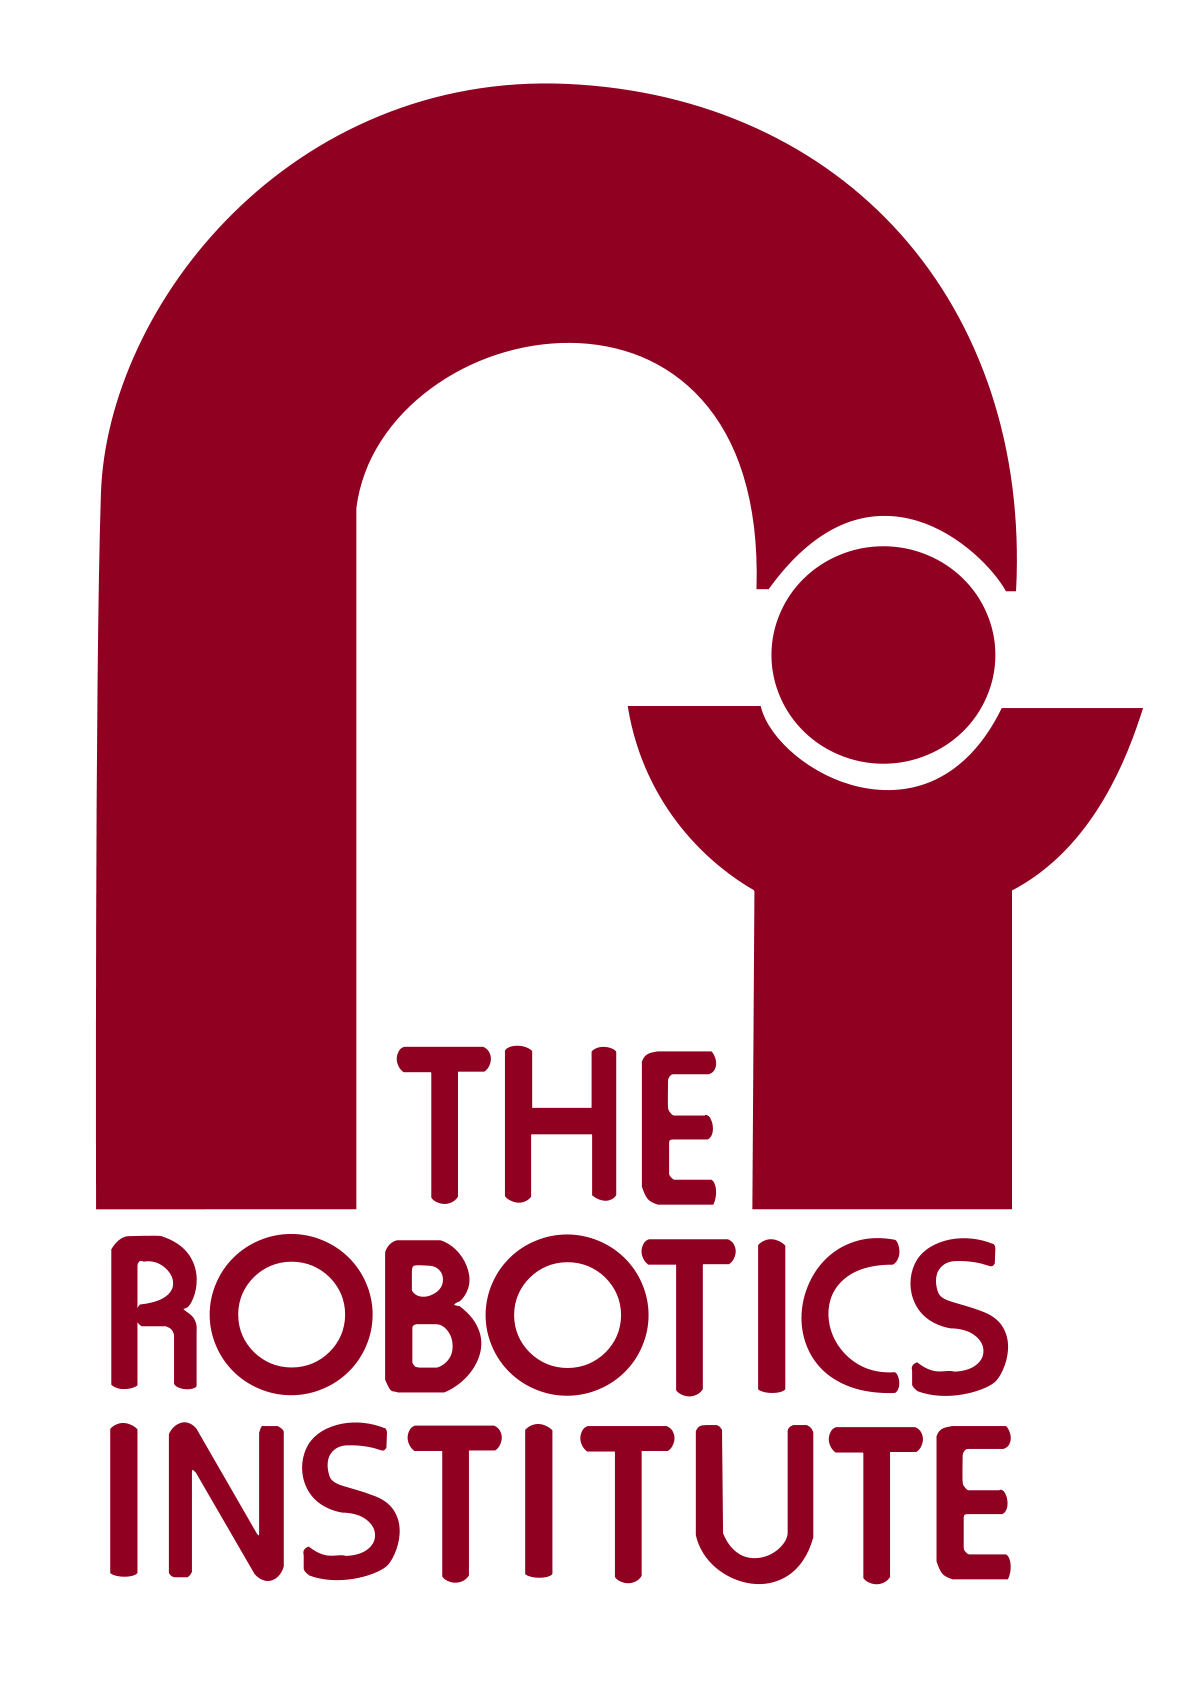 CMU Logo - Robotics Institute